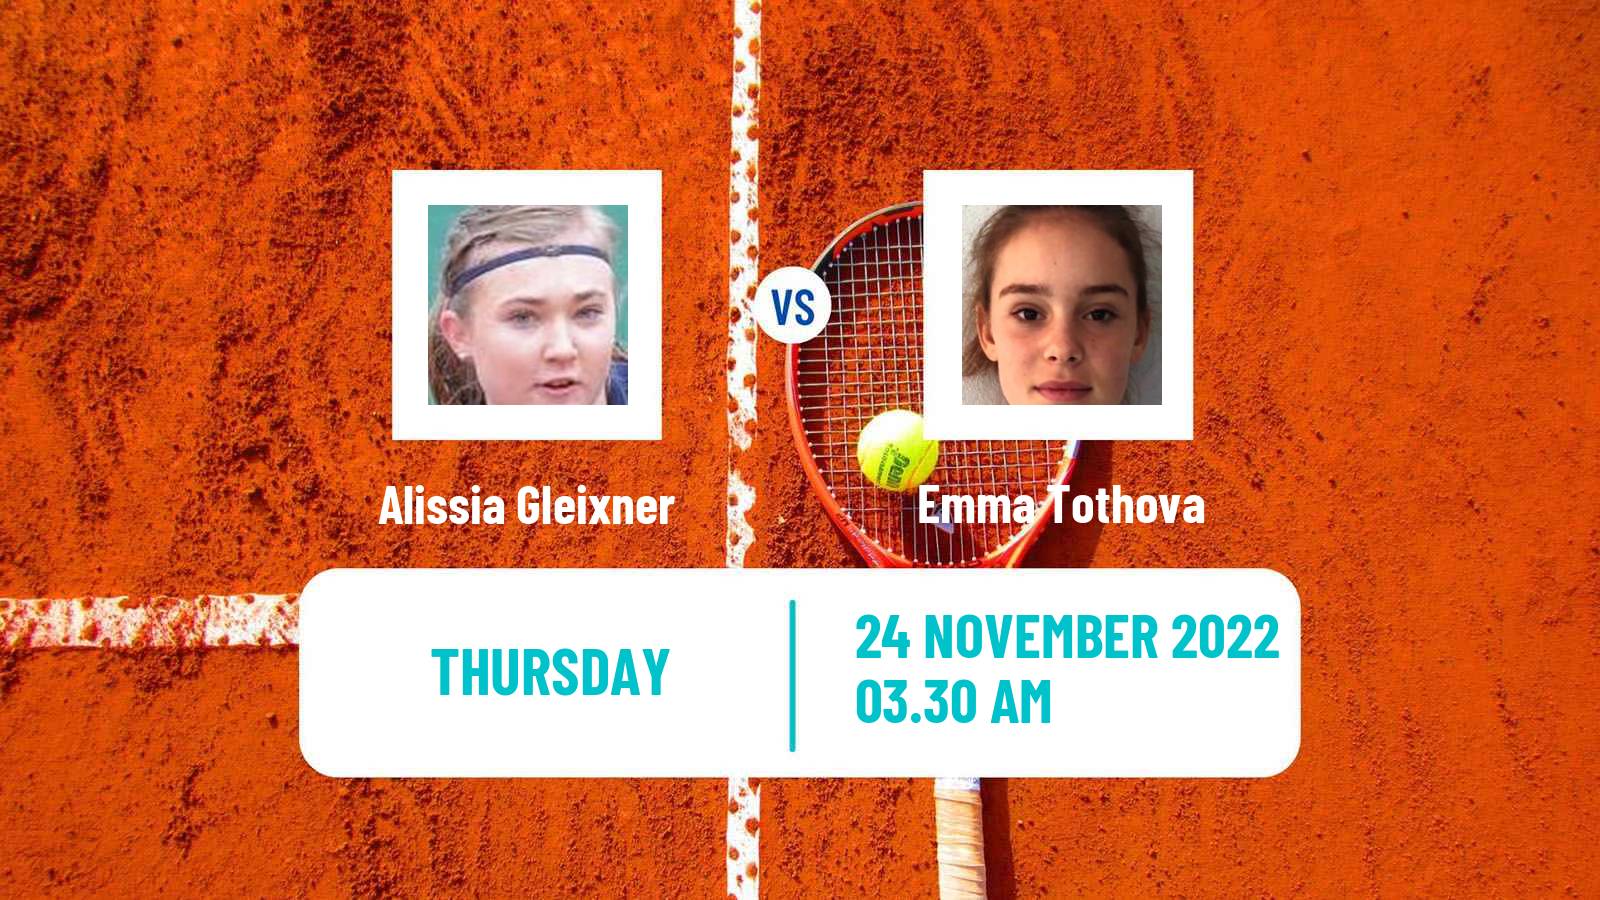 Tennis ITF Tournaments Alissia Gleixner - Emma Tothova